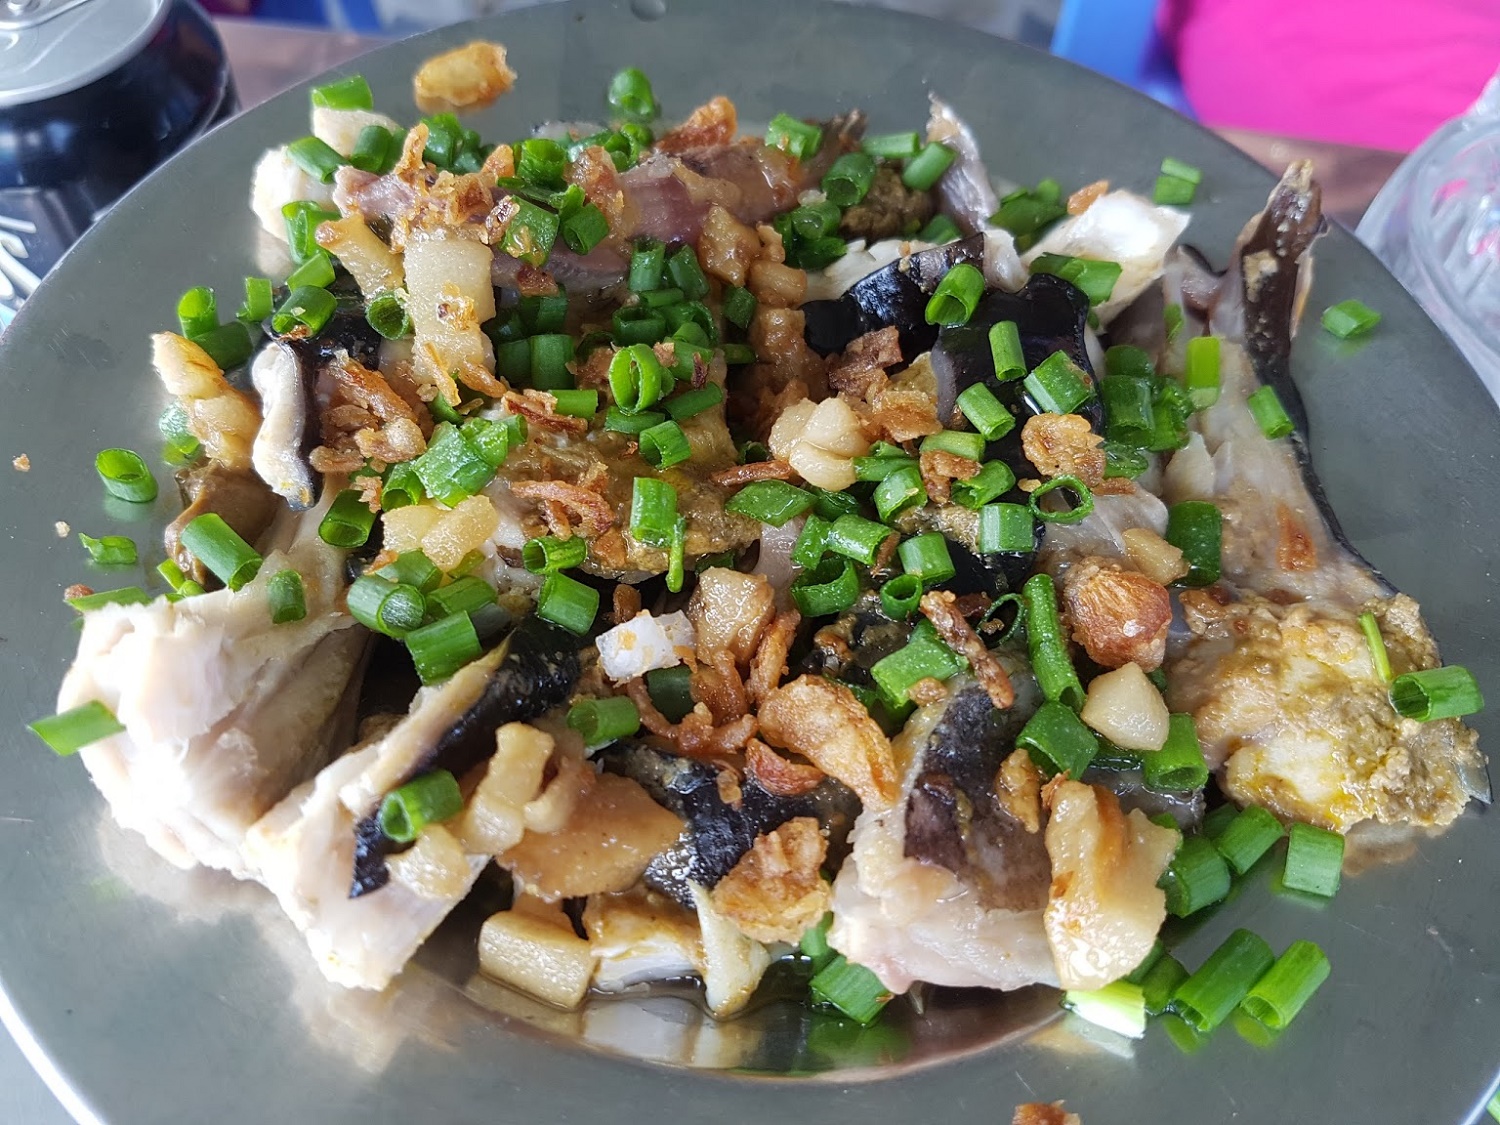 Đến Bình Thuận nhớ ăn cá lồi xối mỡ: Càng ăn càng thèm, xuýt xoa mãi không thôi! - Ảnh 2.